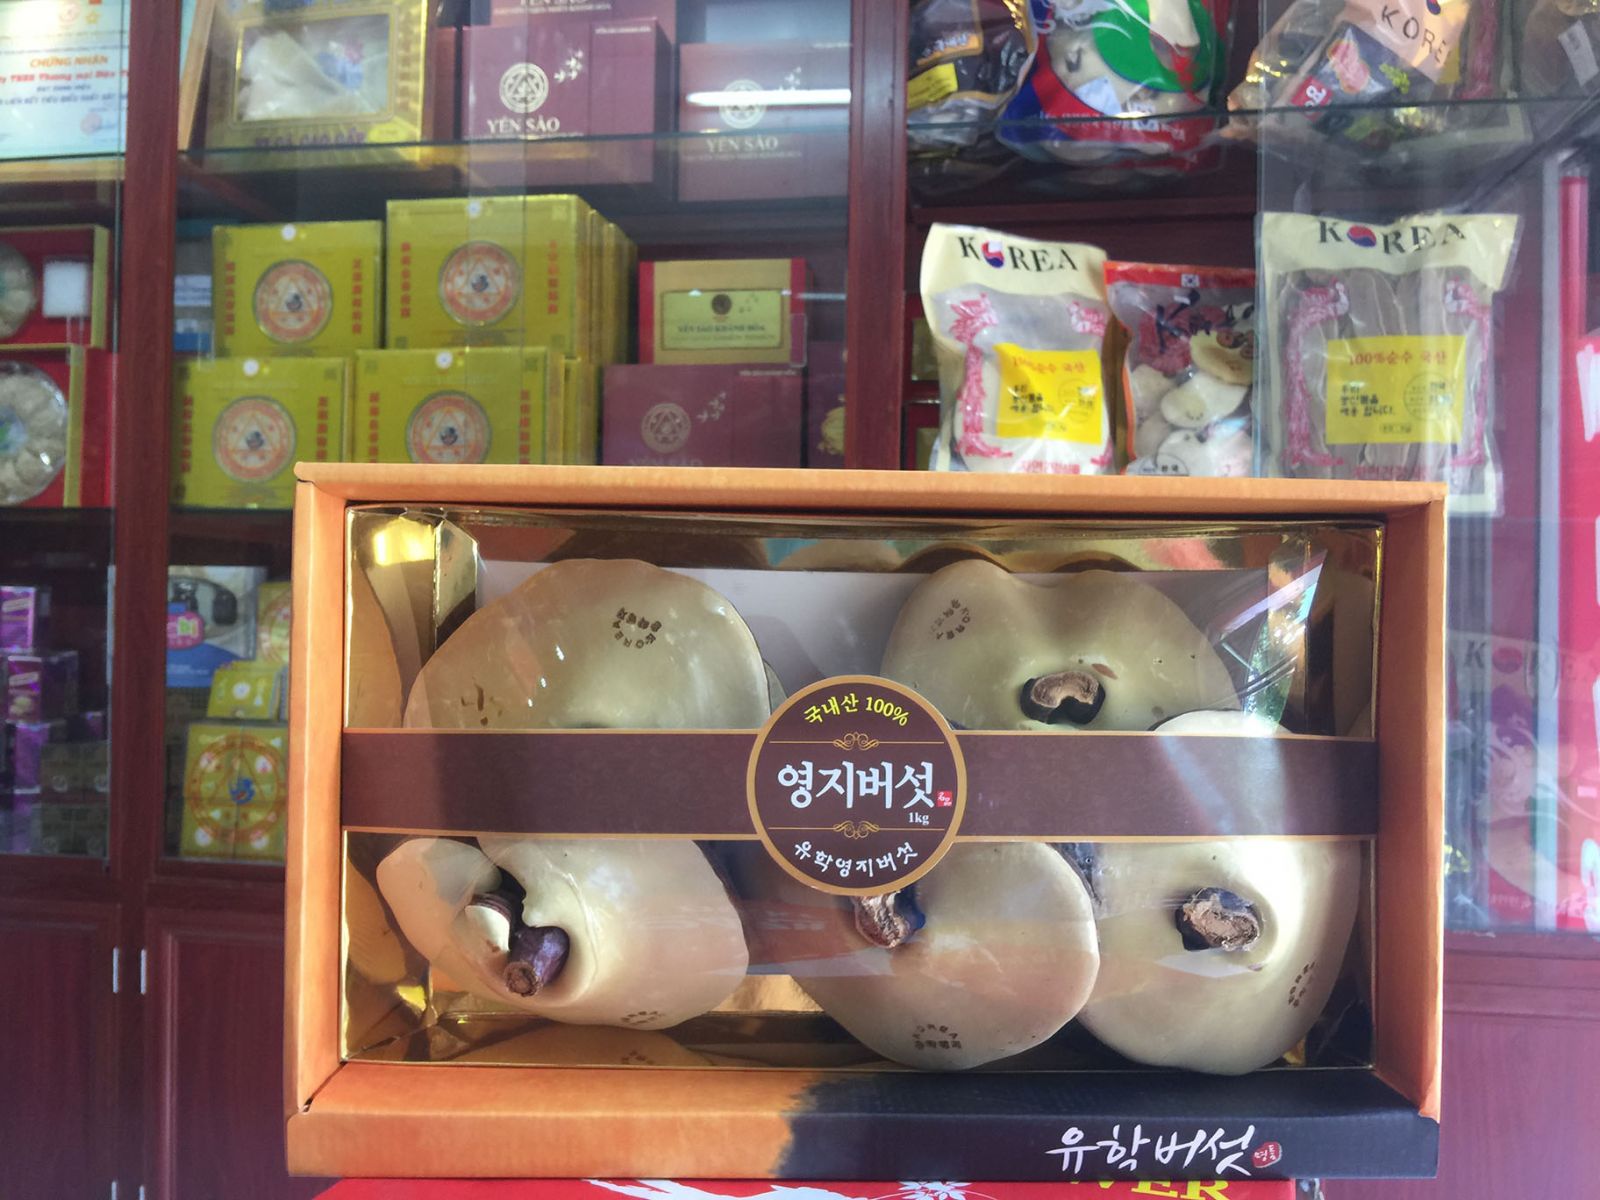 Nấm linh chi Hàn Quốc thượng hạng hộp quà tặng 1kg